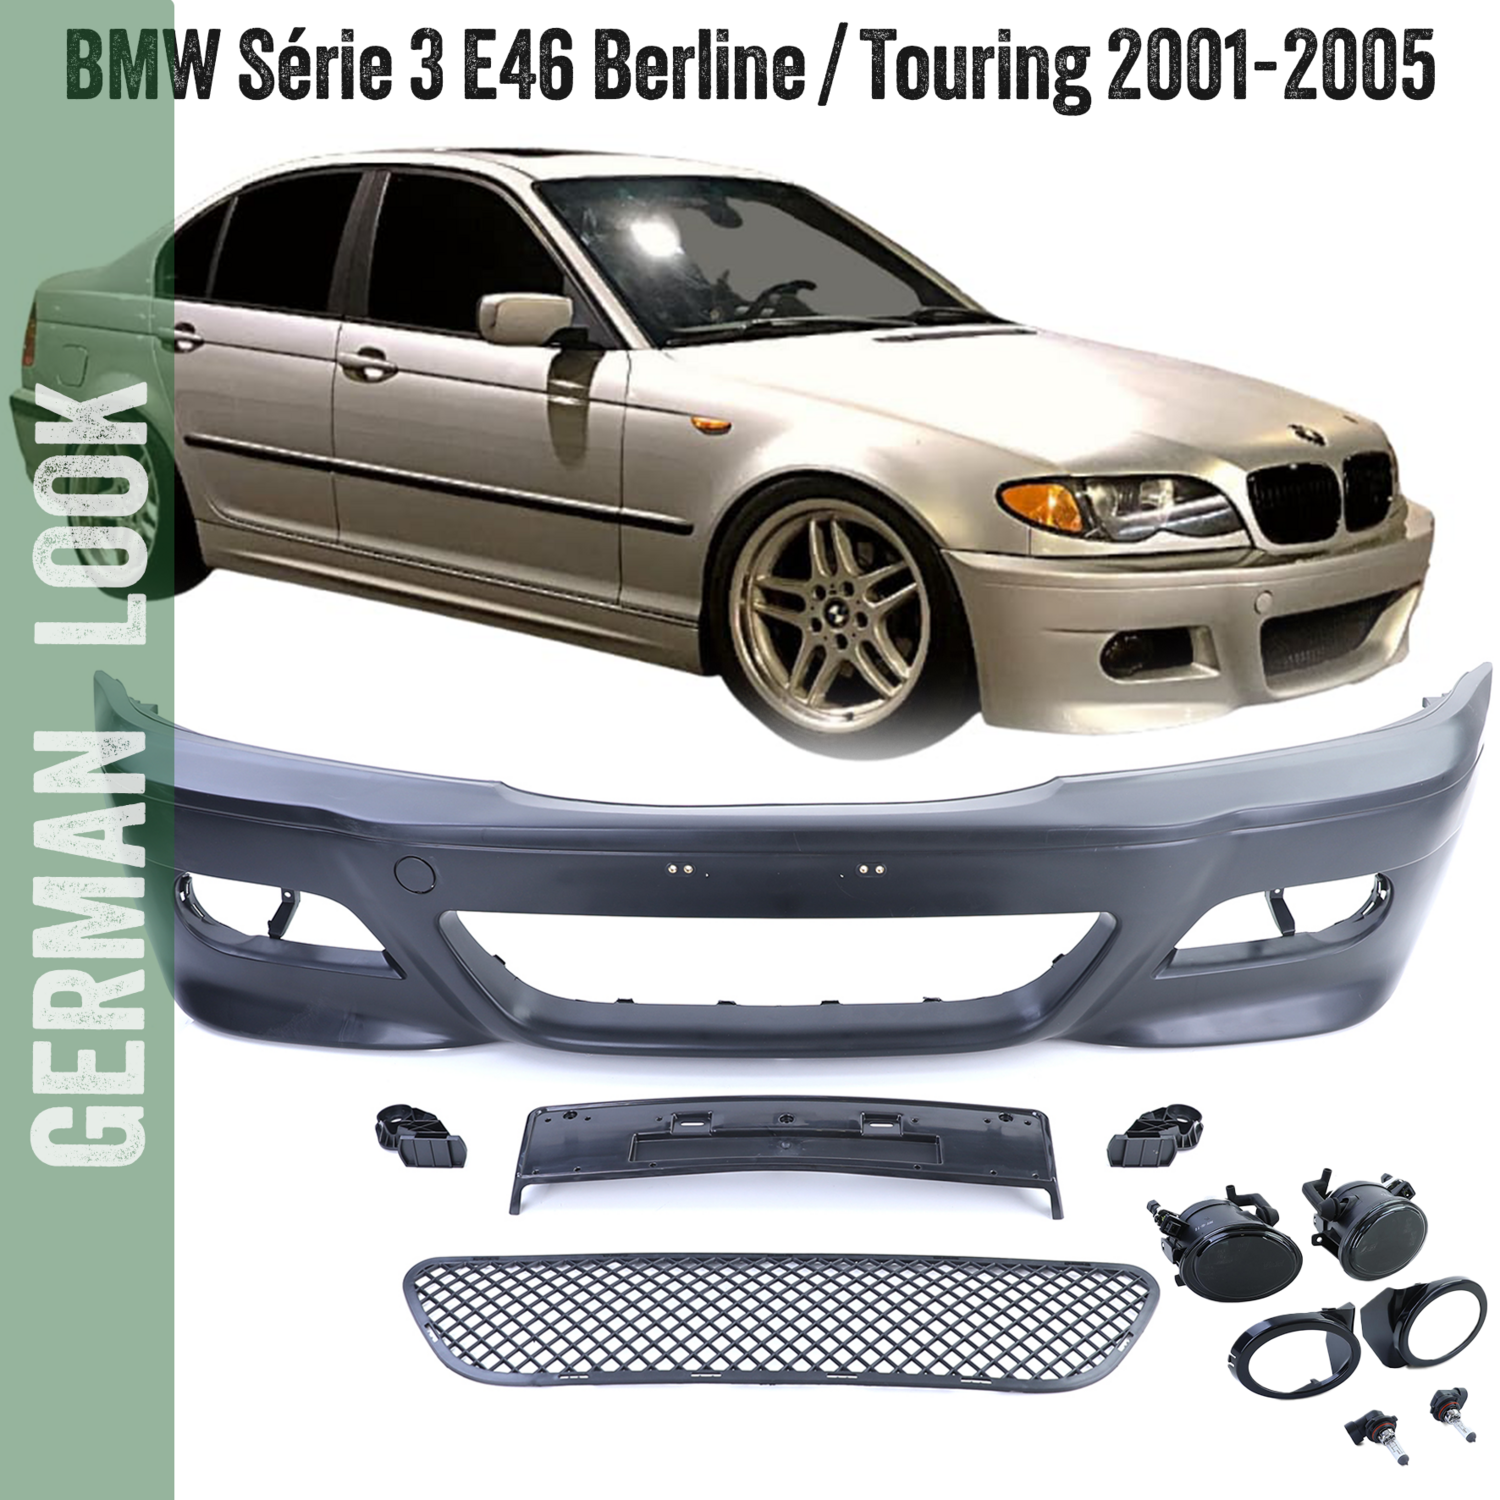 Pare-chocs avant BMW Série 3 E46 Look M3 pour Berline Touring 2001-2005 + Gissières + suport plaque + Antibrouillards noir